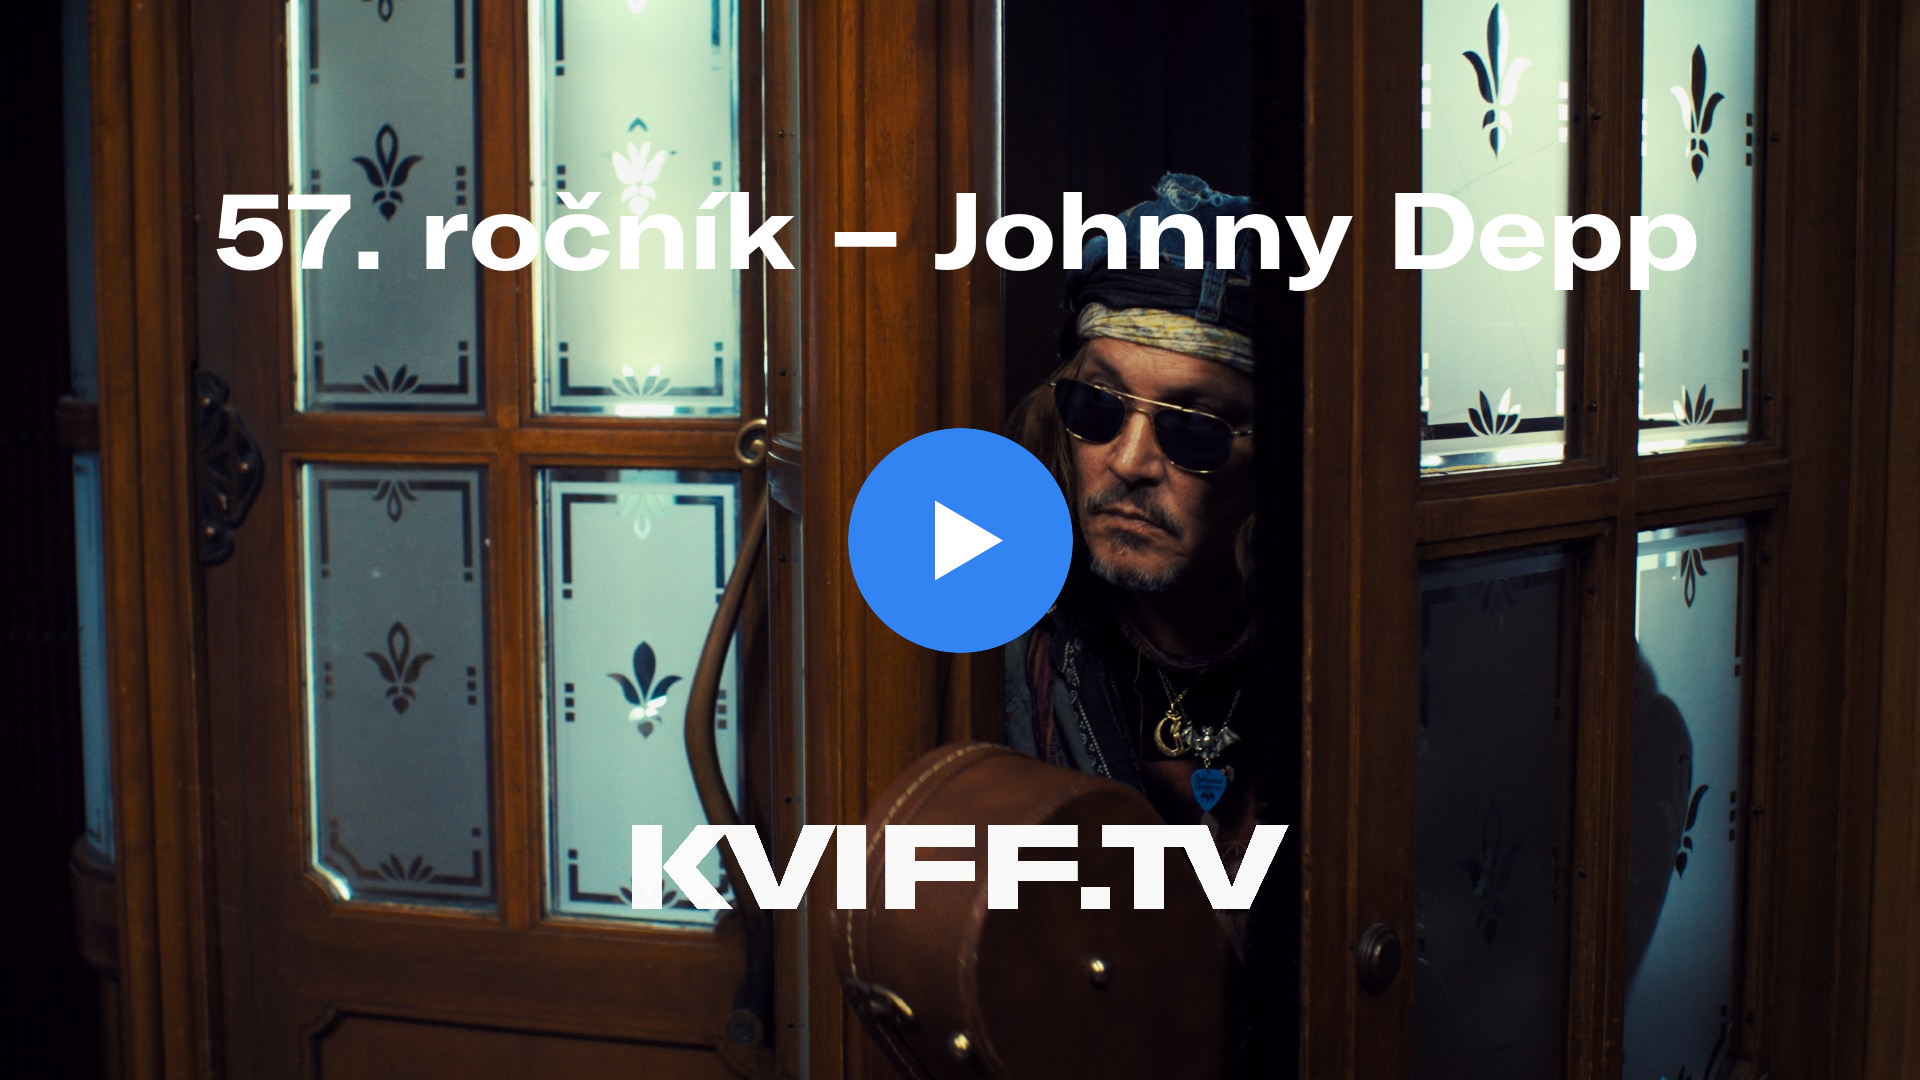 Festival ve Varech: Johnny Depp by se měl setkat s Ivou Frühlingovou! –